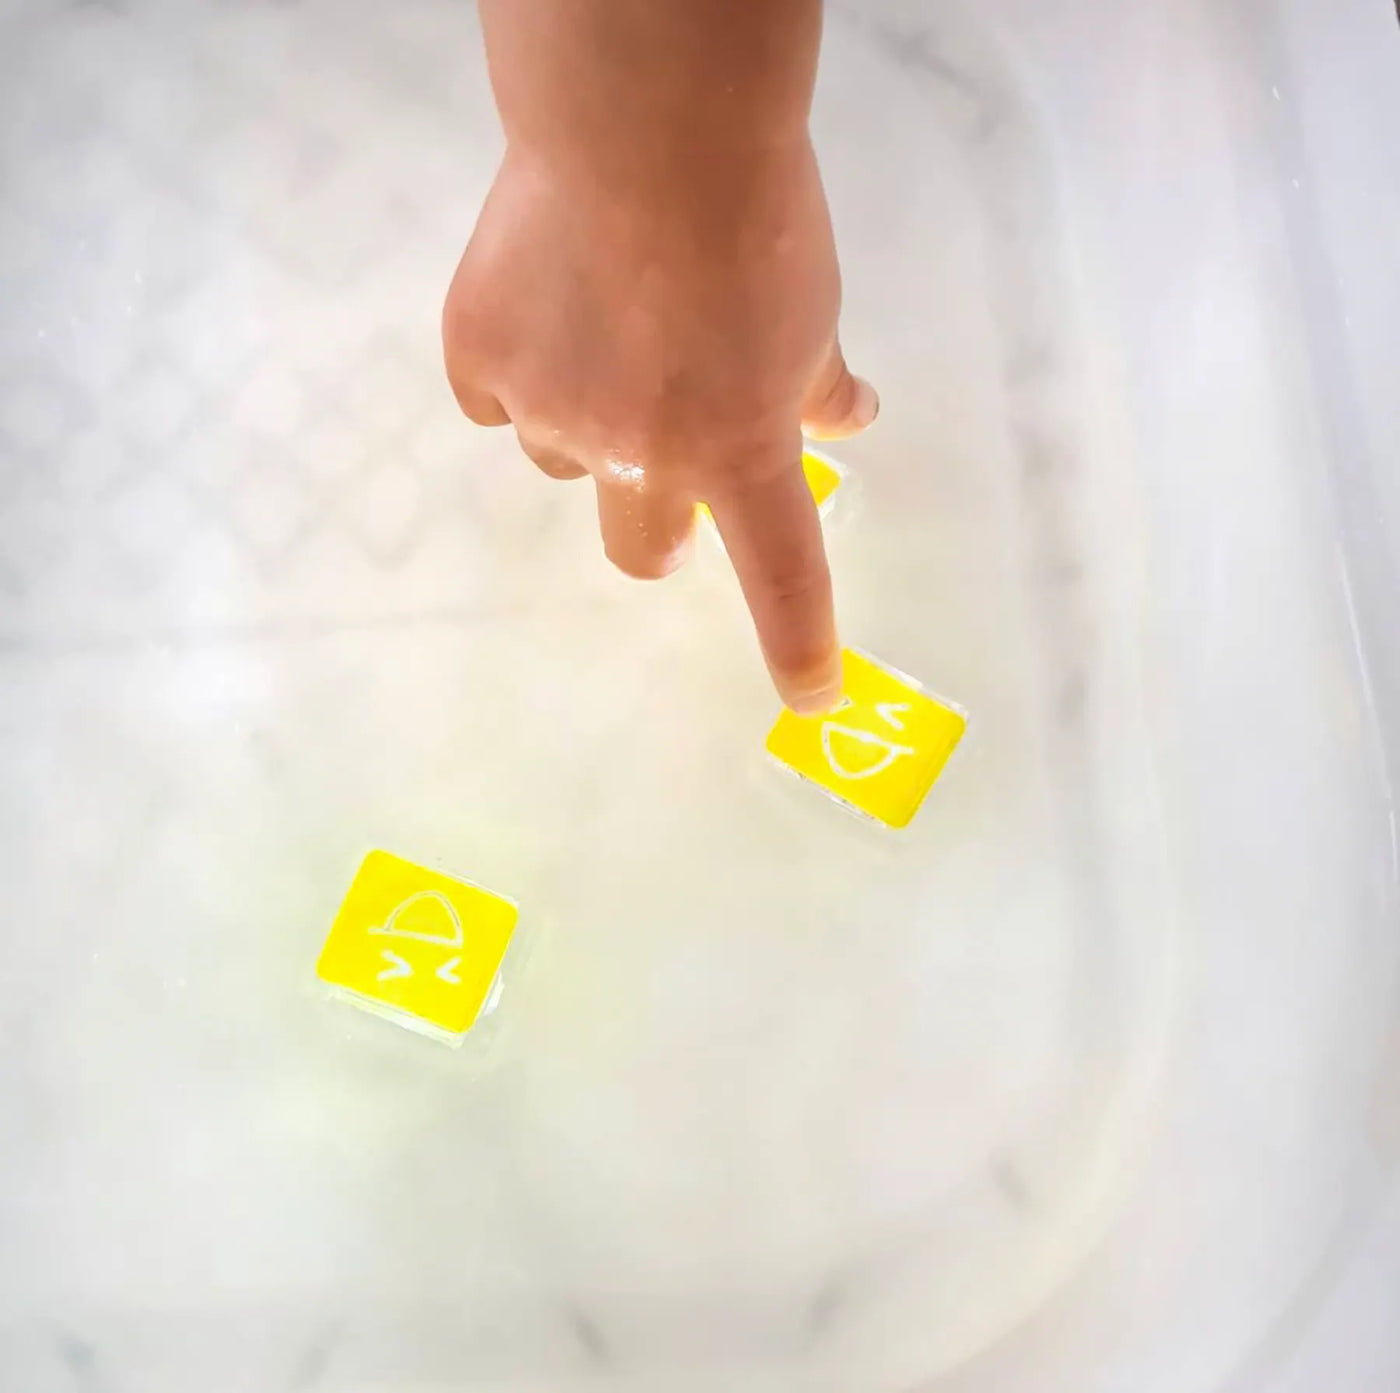 GloPals, juguetes sensorial activado por agua: ALEX